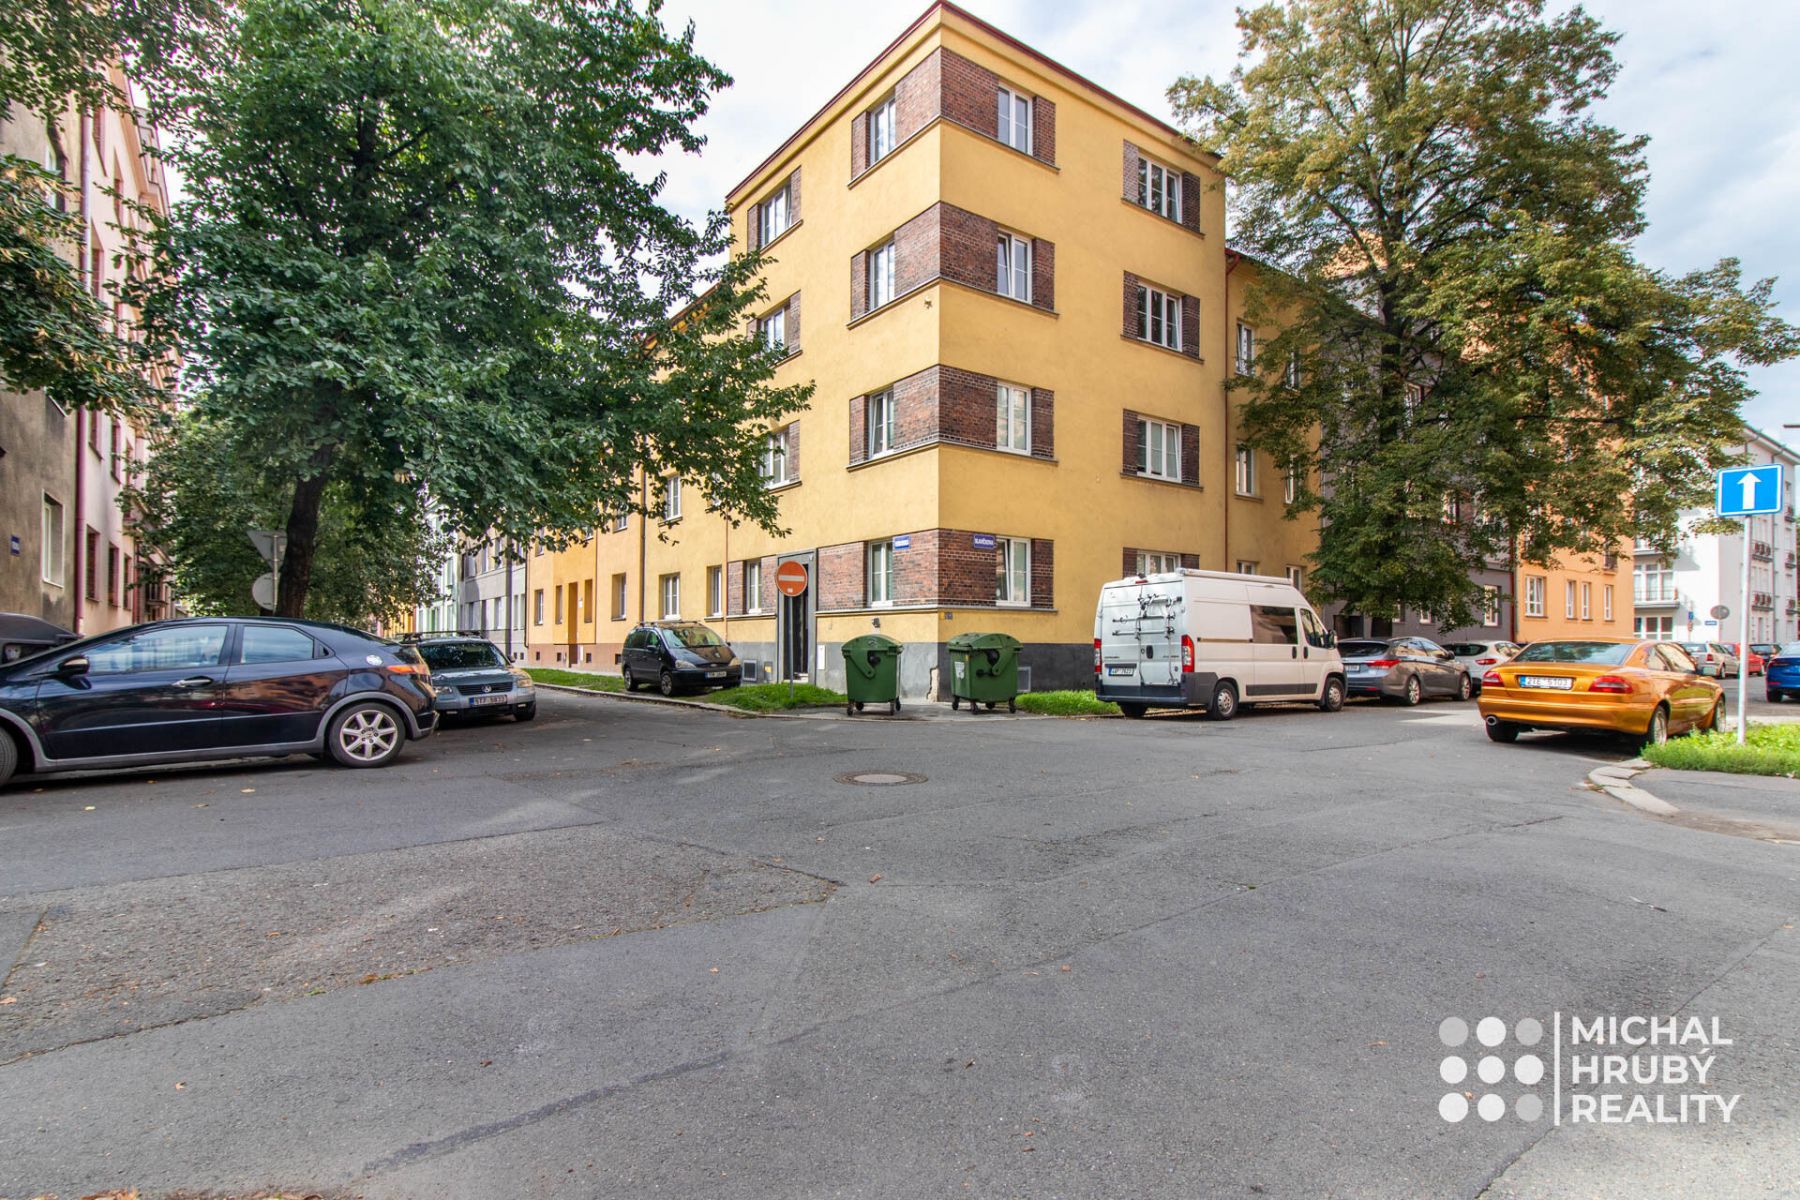 Prodej činžovního domu se 7 byty po rekonstrukci v centru Ostravy, obrázek č. 1